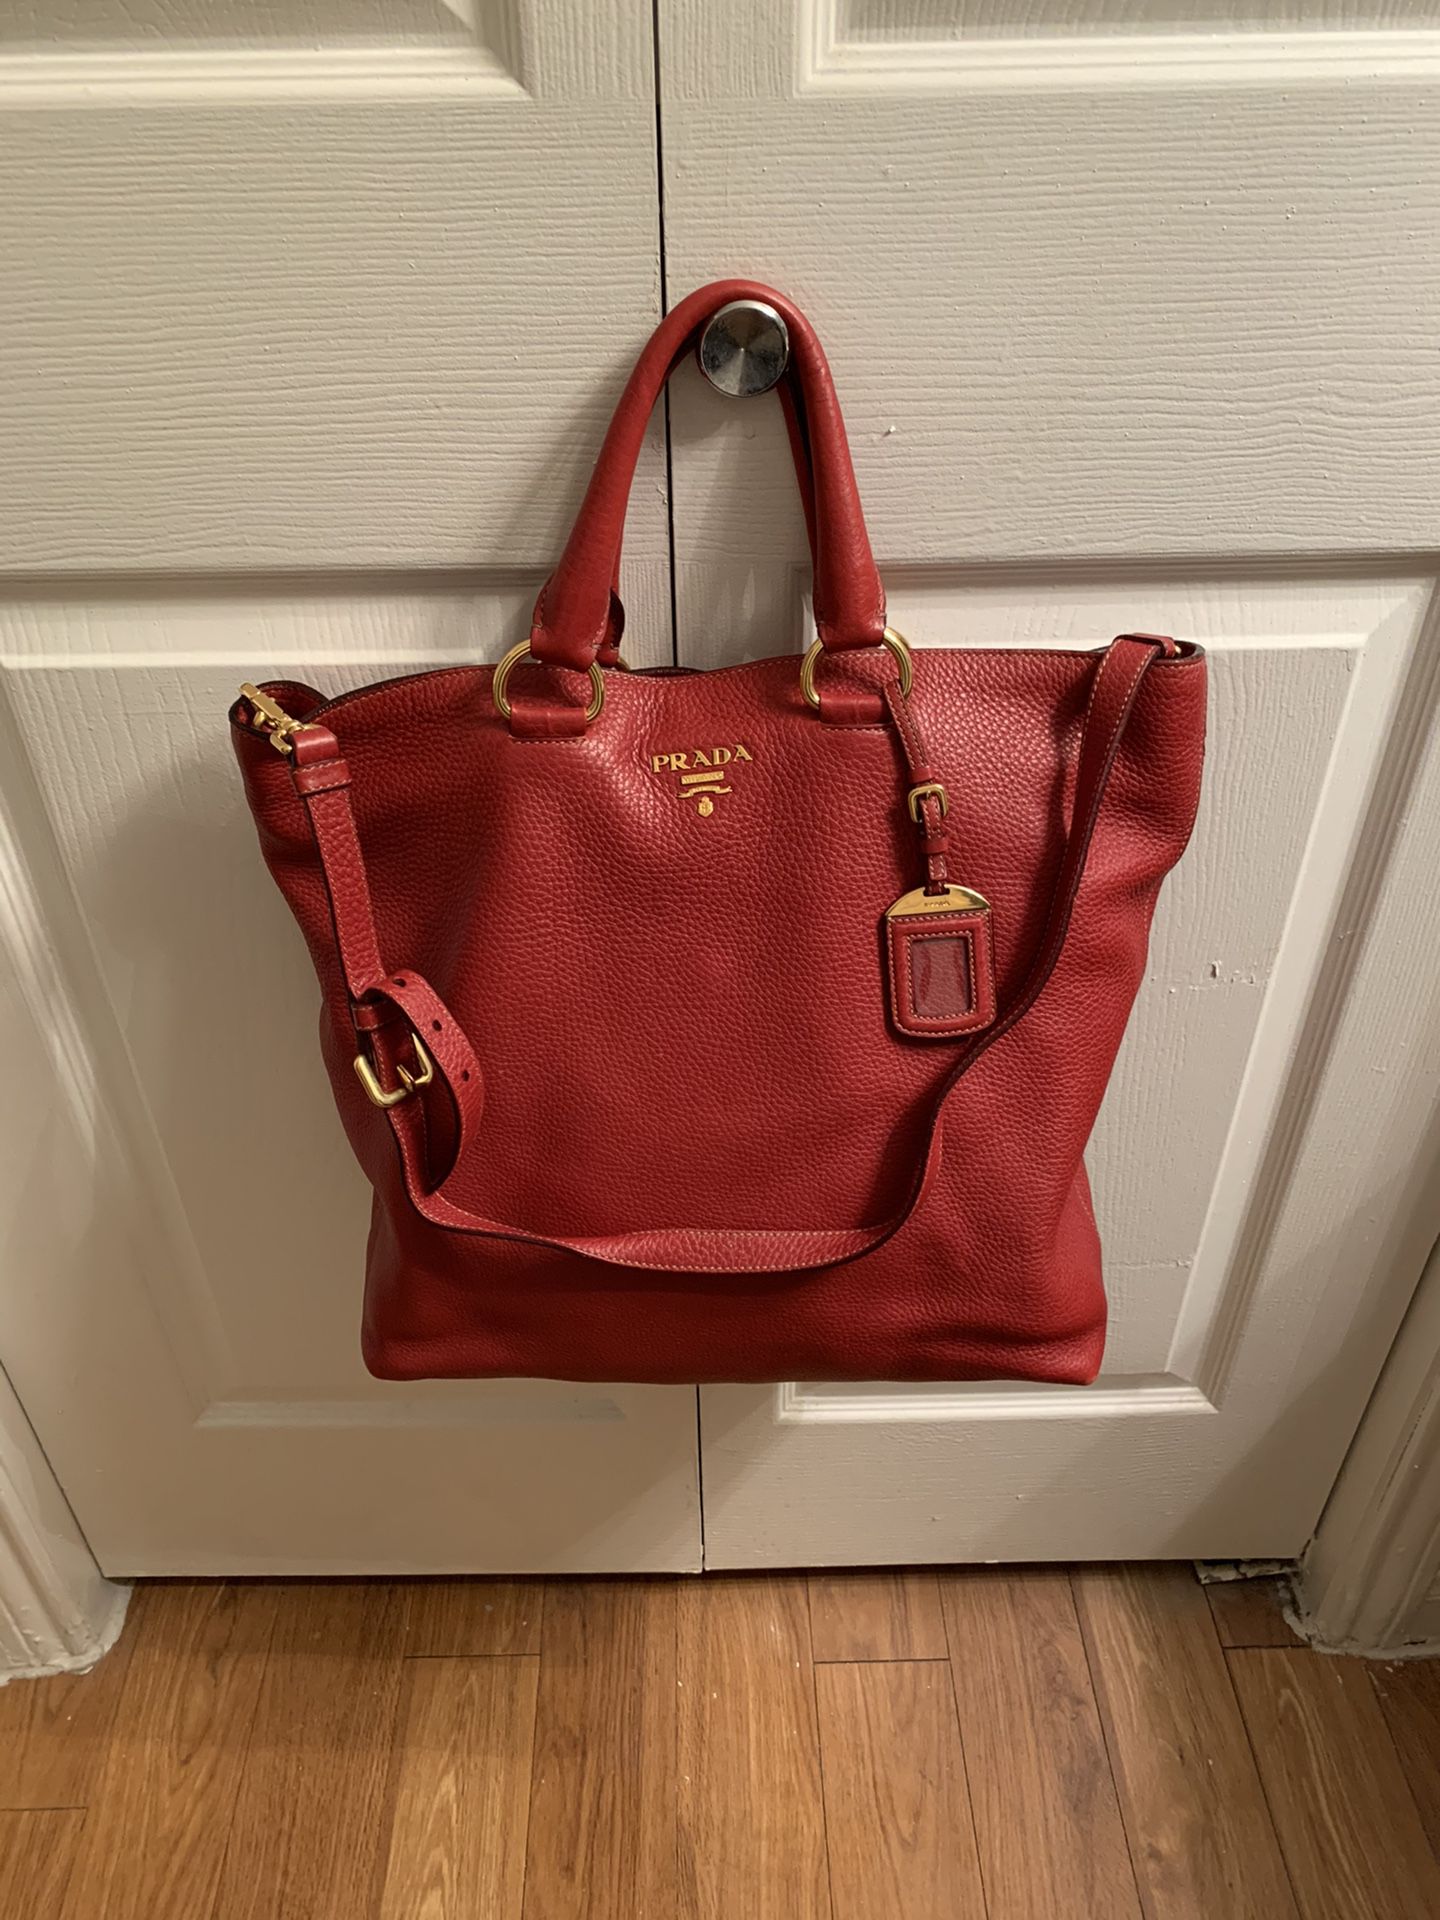 Authentic Prada Red Vitello Leather Tote bag